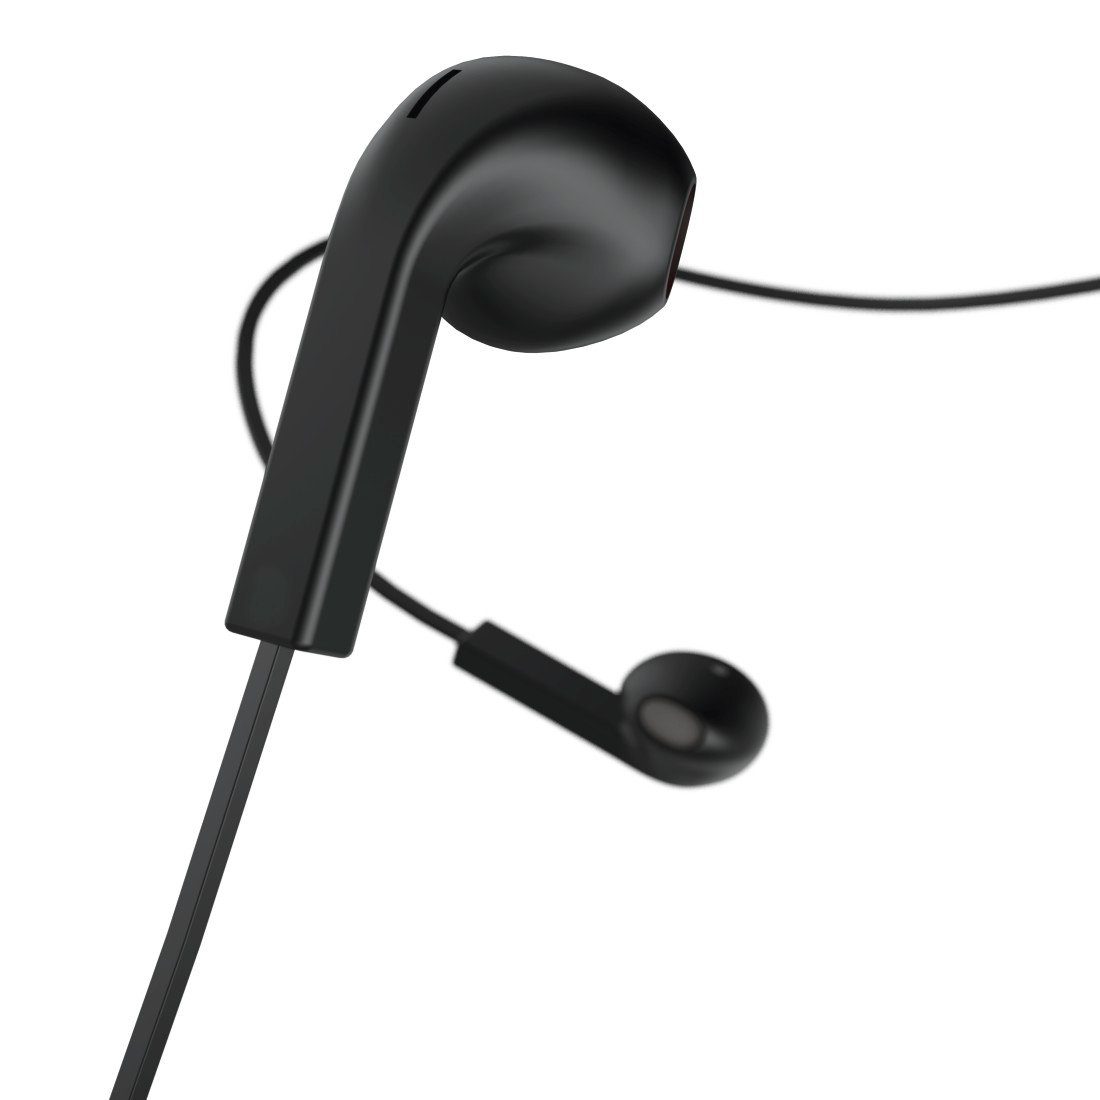 Hama Kopfhörer "Advance", Earbuds, Mikrofon, Flachbandkabel schwarz In-Ear-Kopfhörer in Ear